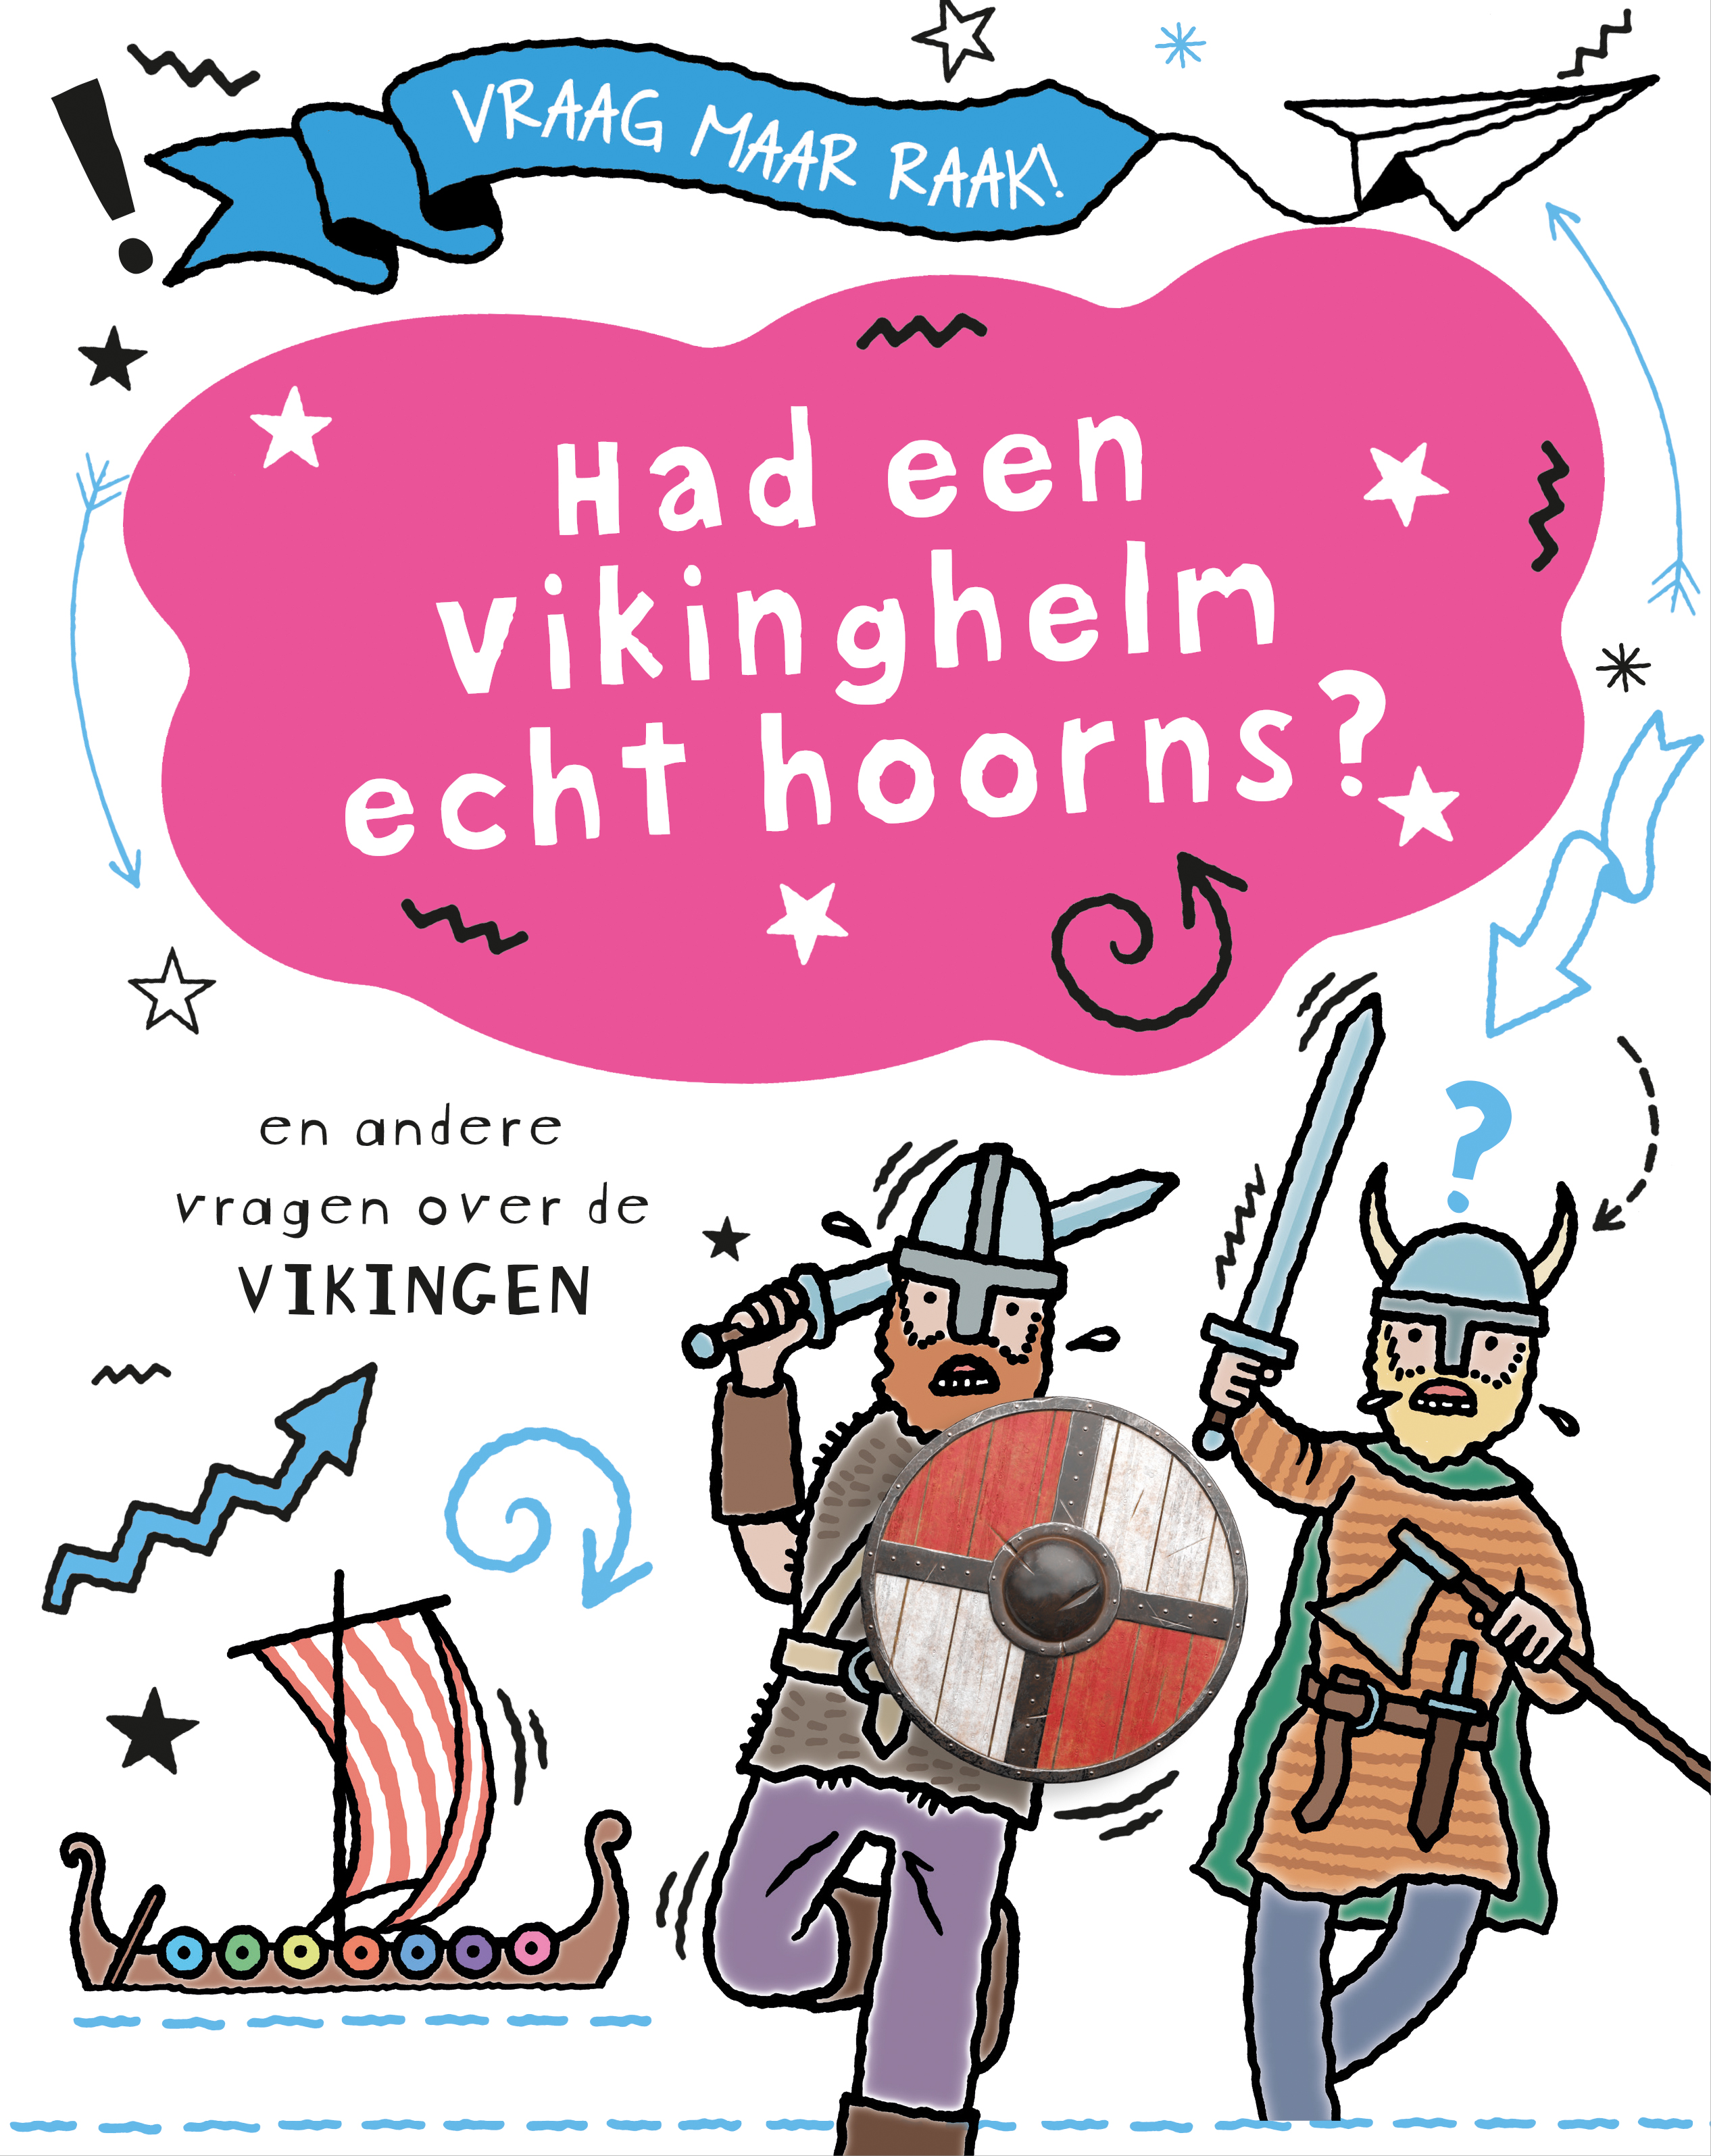 CNBVRA013 Had een vikinghelm echt hoorns? - En andere vragen over de Vikingen